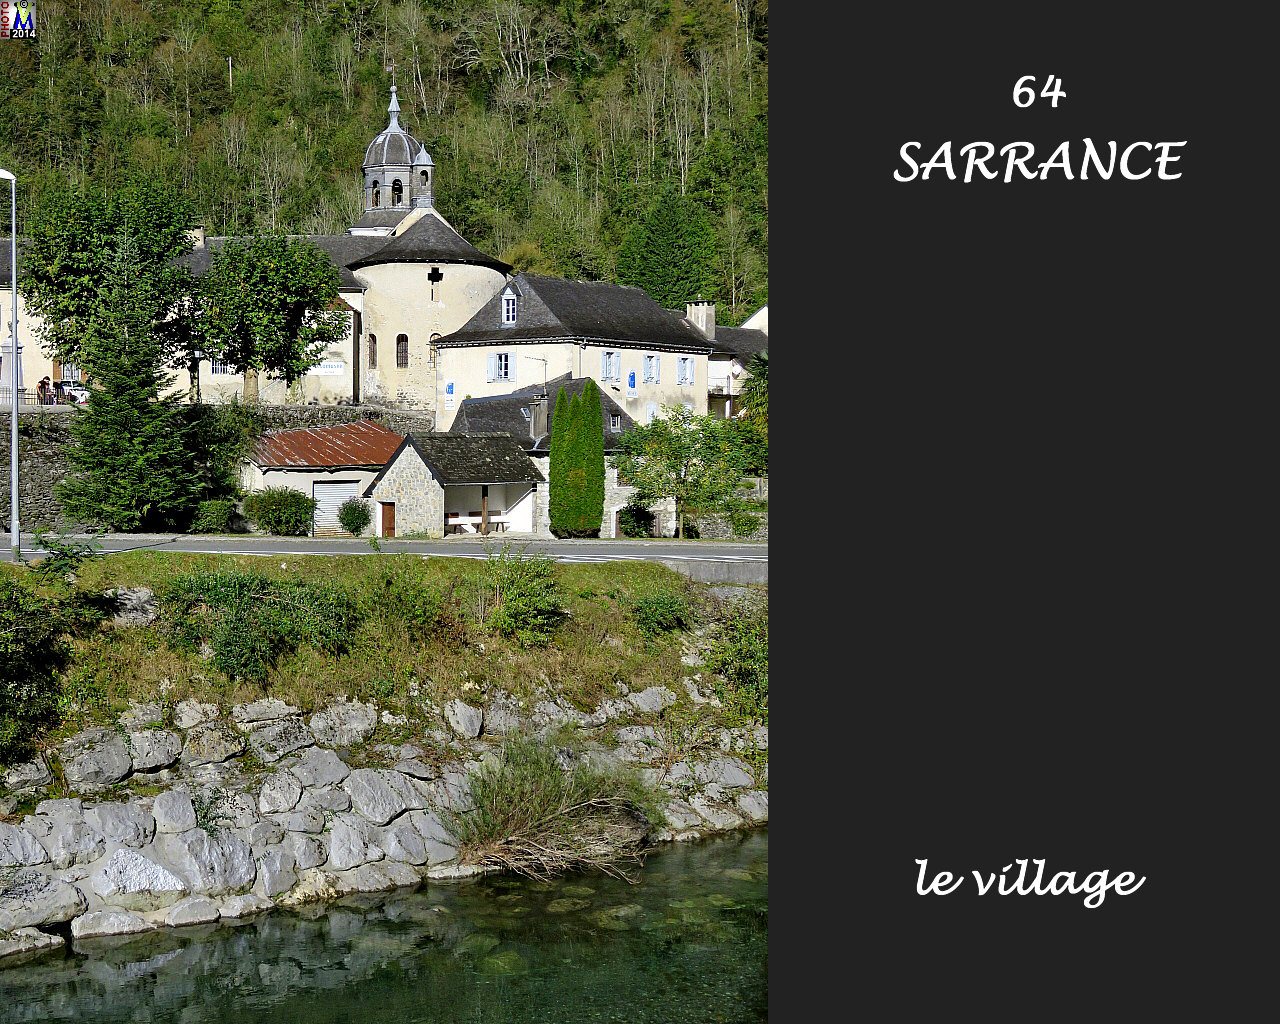 64SARRANCE_village_120.jpg